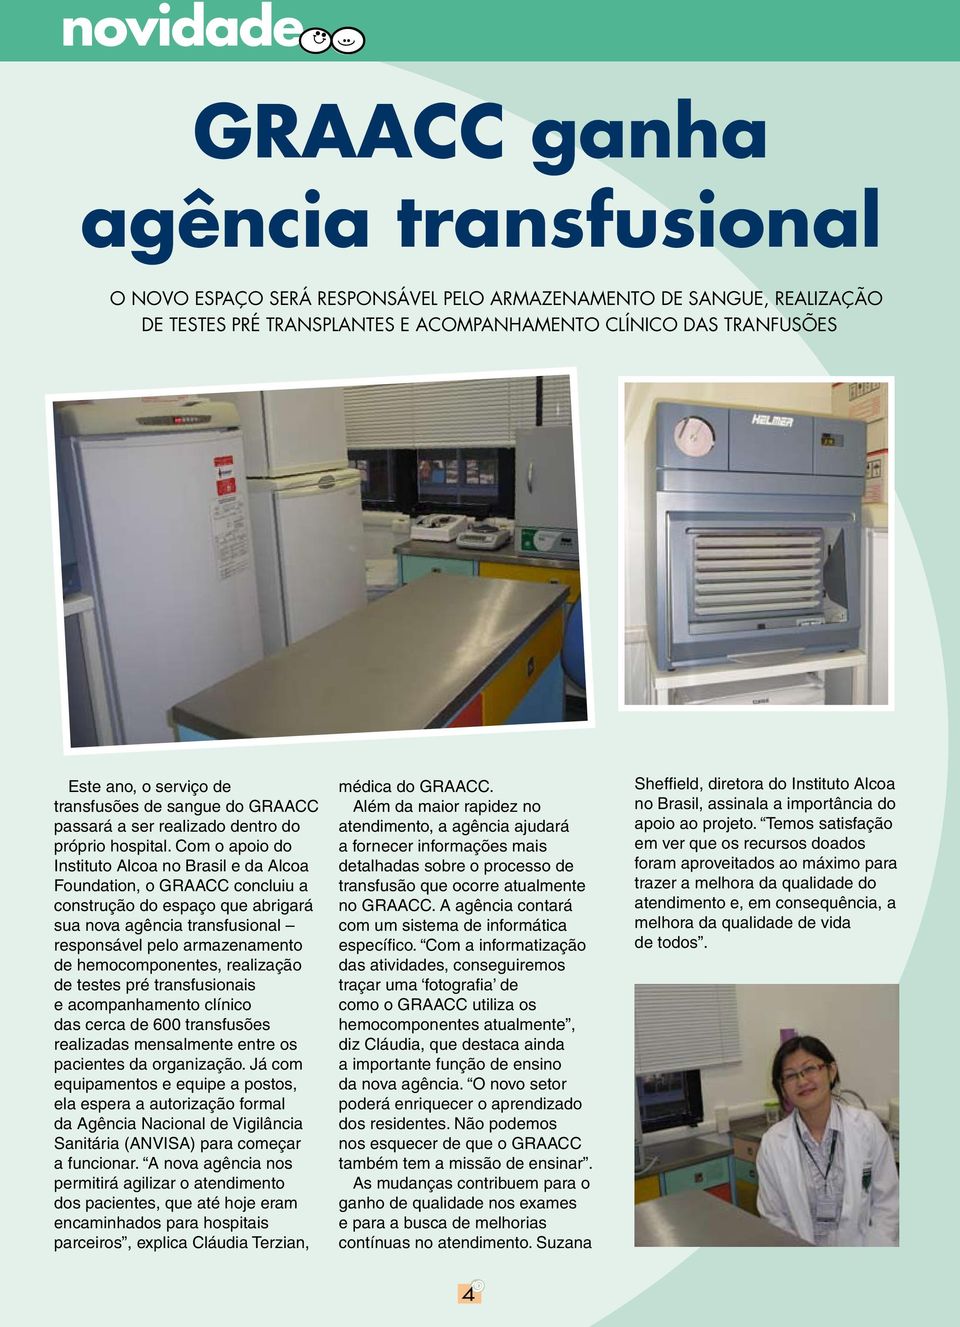 Com o apoio do Instituto Alcoa no Brasil e da Alcoa Foundation, o GRAACC concluiu a construção do espaço que abrigará sua nova agência transfusional responsável pelo armazenamento de hemocomponentes,